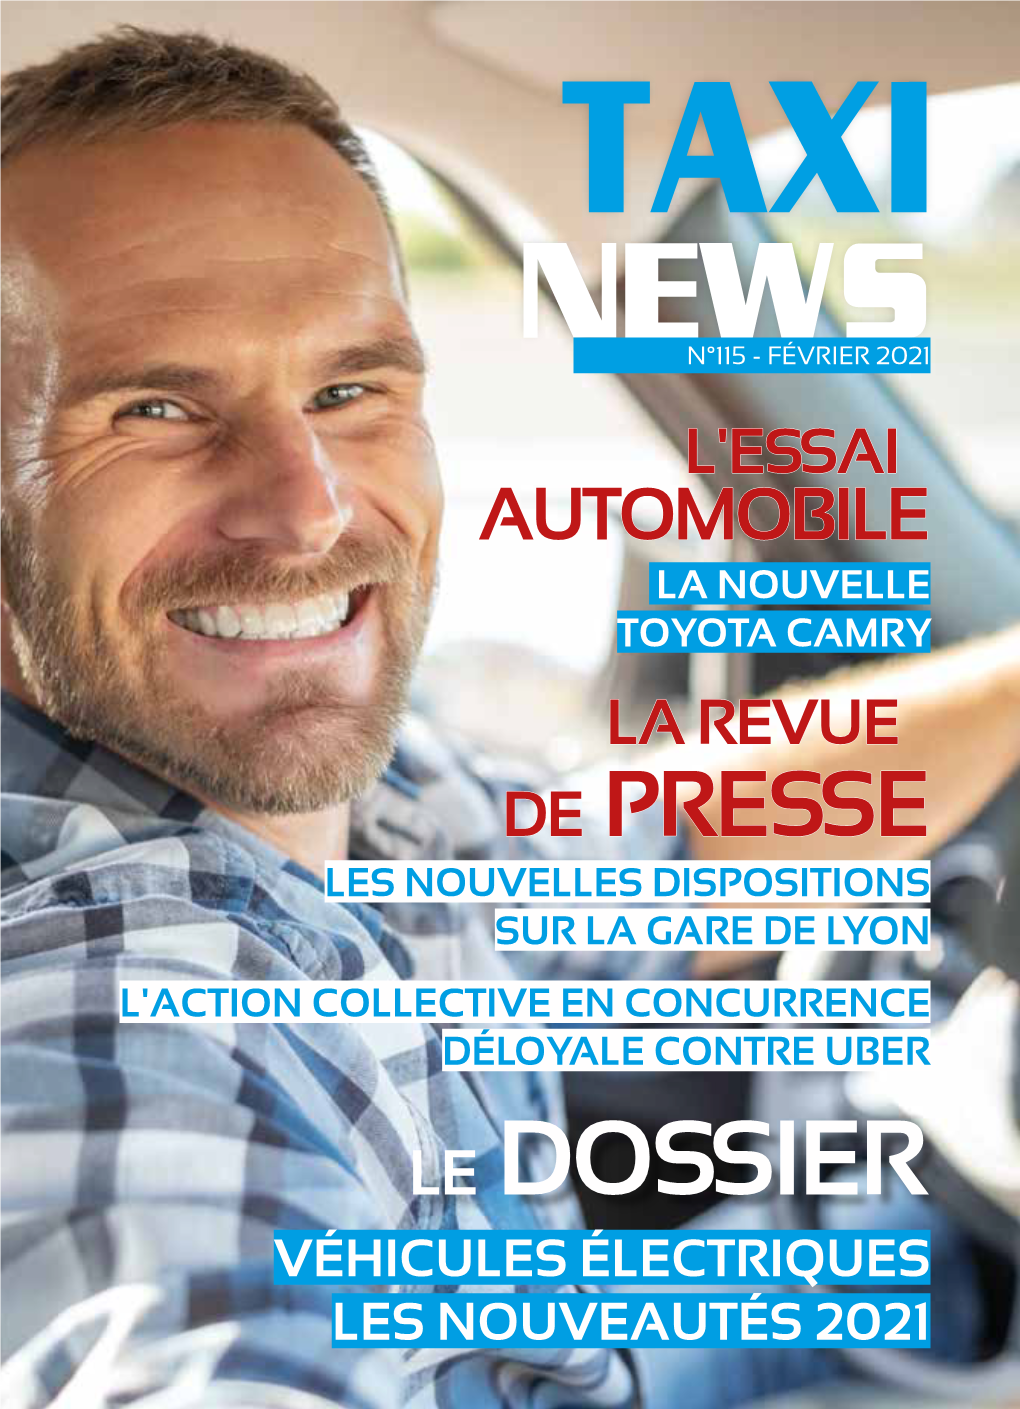 Le Dossier Véhicules Électriques Les Nouveautés 2021 Taxi News 2 Sommaire